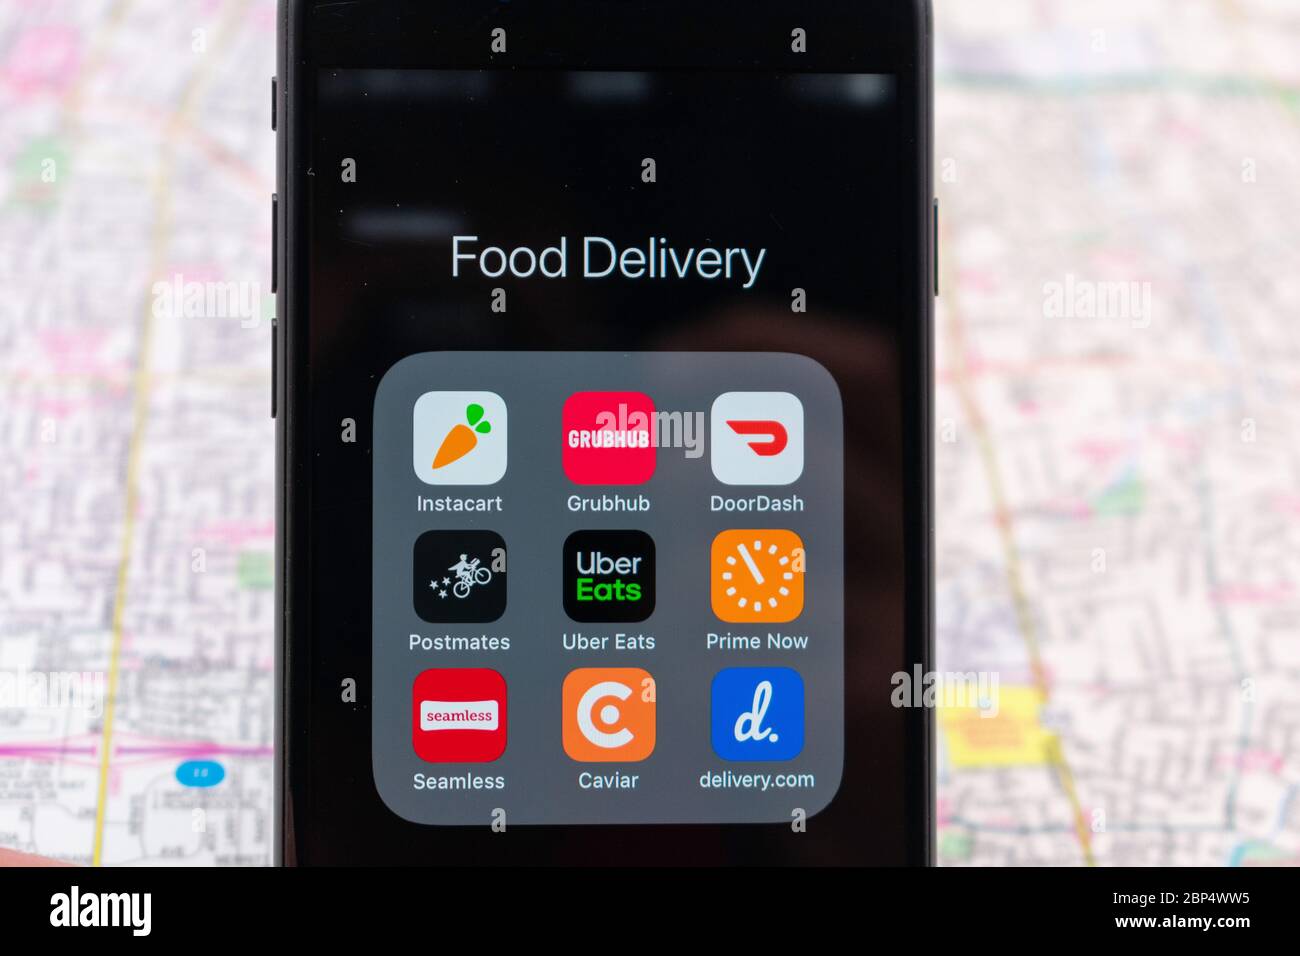 Applicazioni per la consegna di alimenti su smartphone: Instacart, DoorDash, Grubbuhub, Uber Eats, prime Now, Delivery.com, Seamless, Postmates, Caviar. Mappa sfocata b Foto Stock